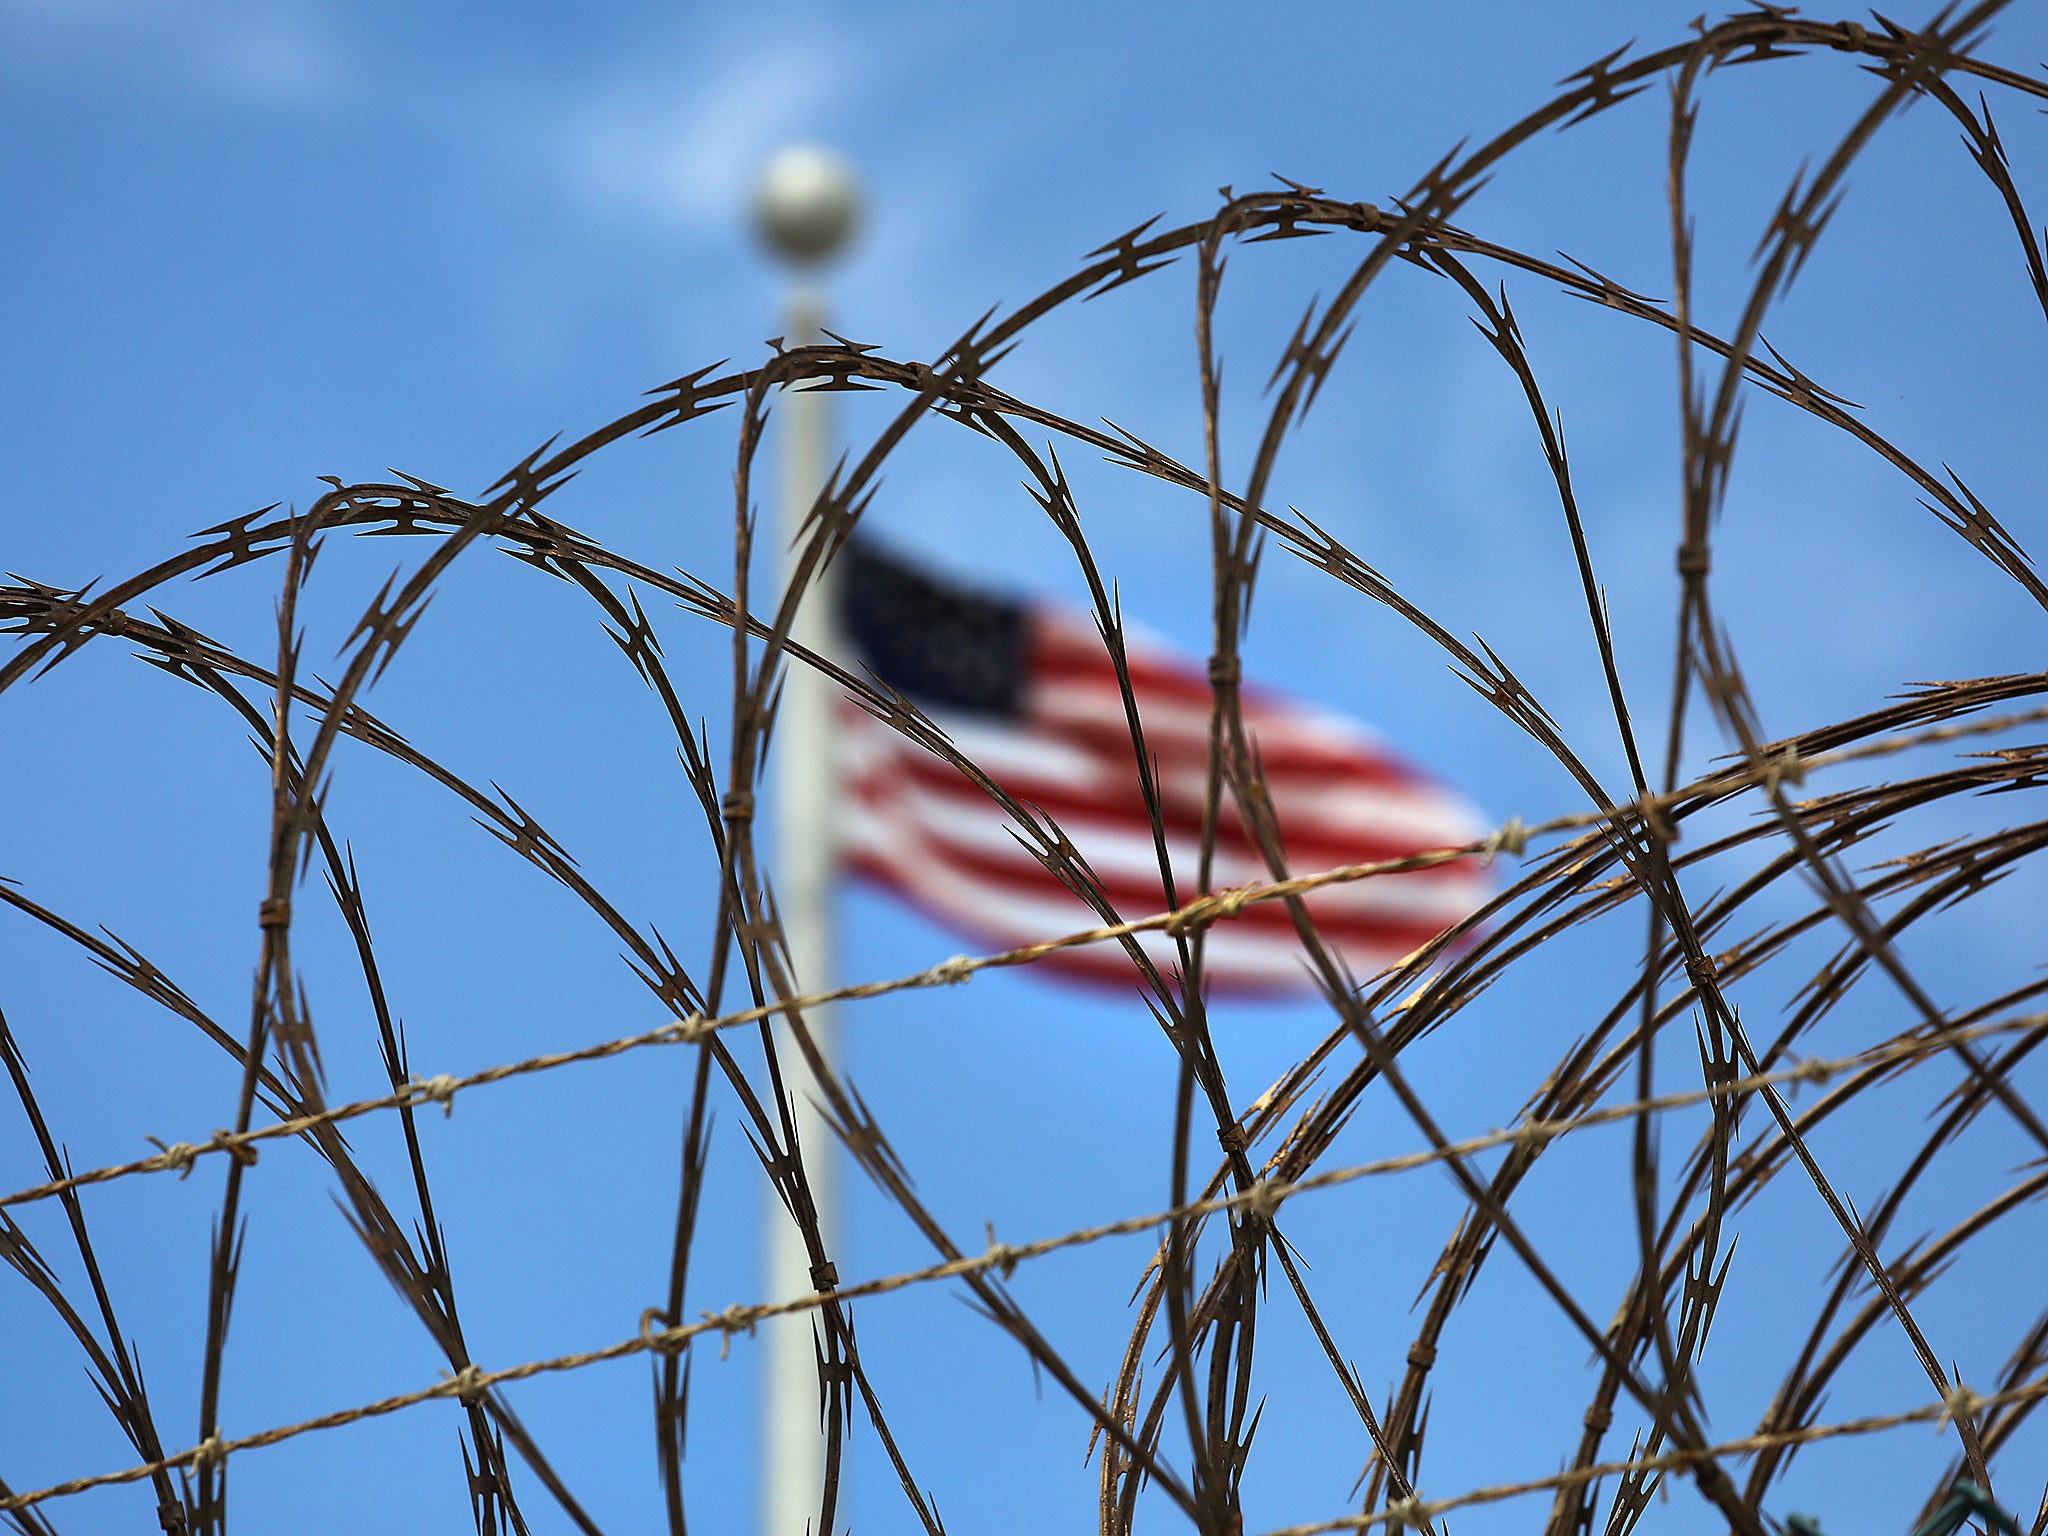 Jamal al-Harith was held held in extrajudicial detention as a suspected enemy combatant in Guantanamo Bay